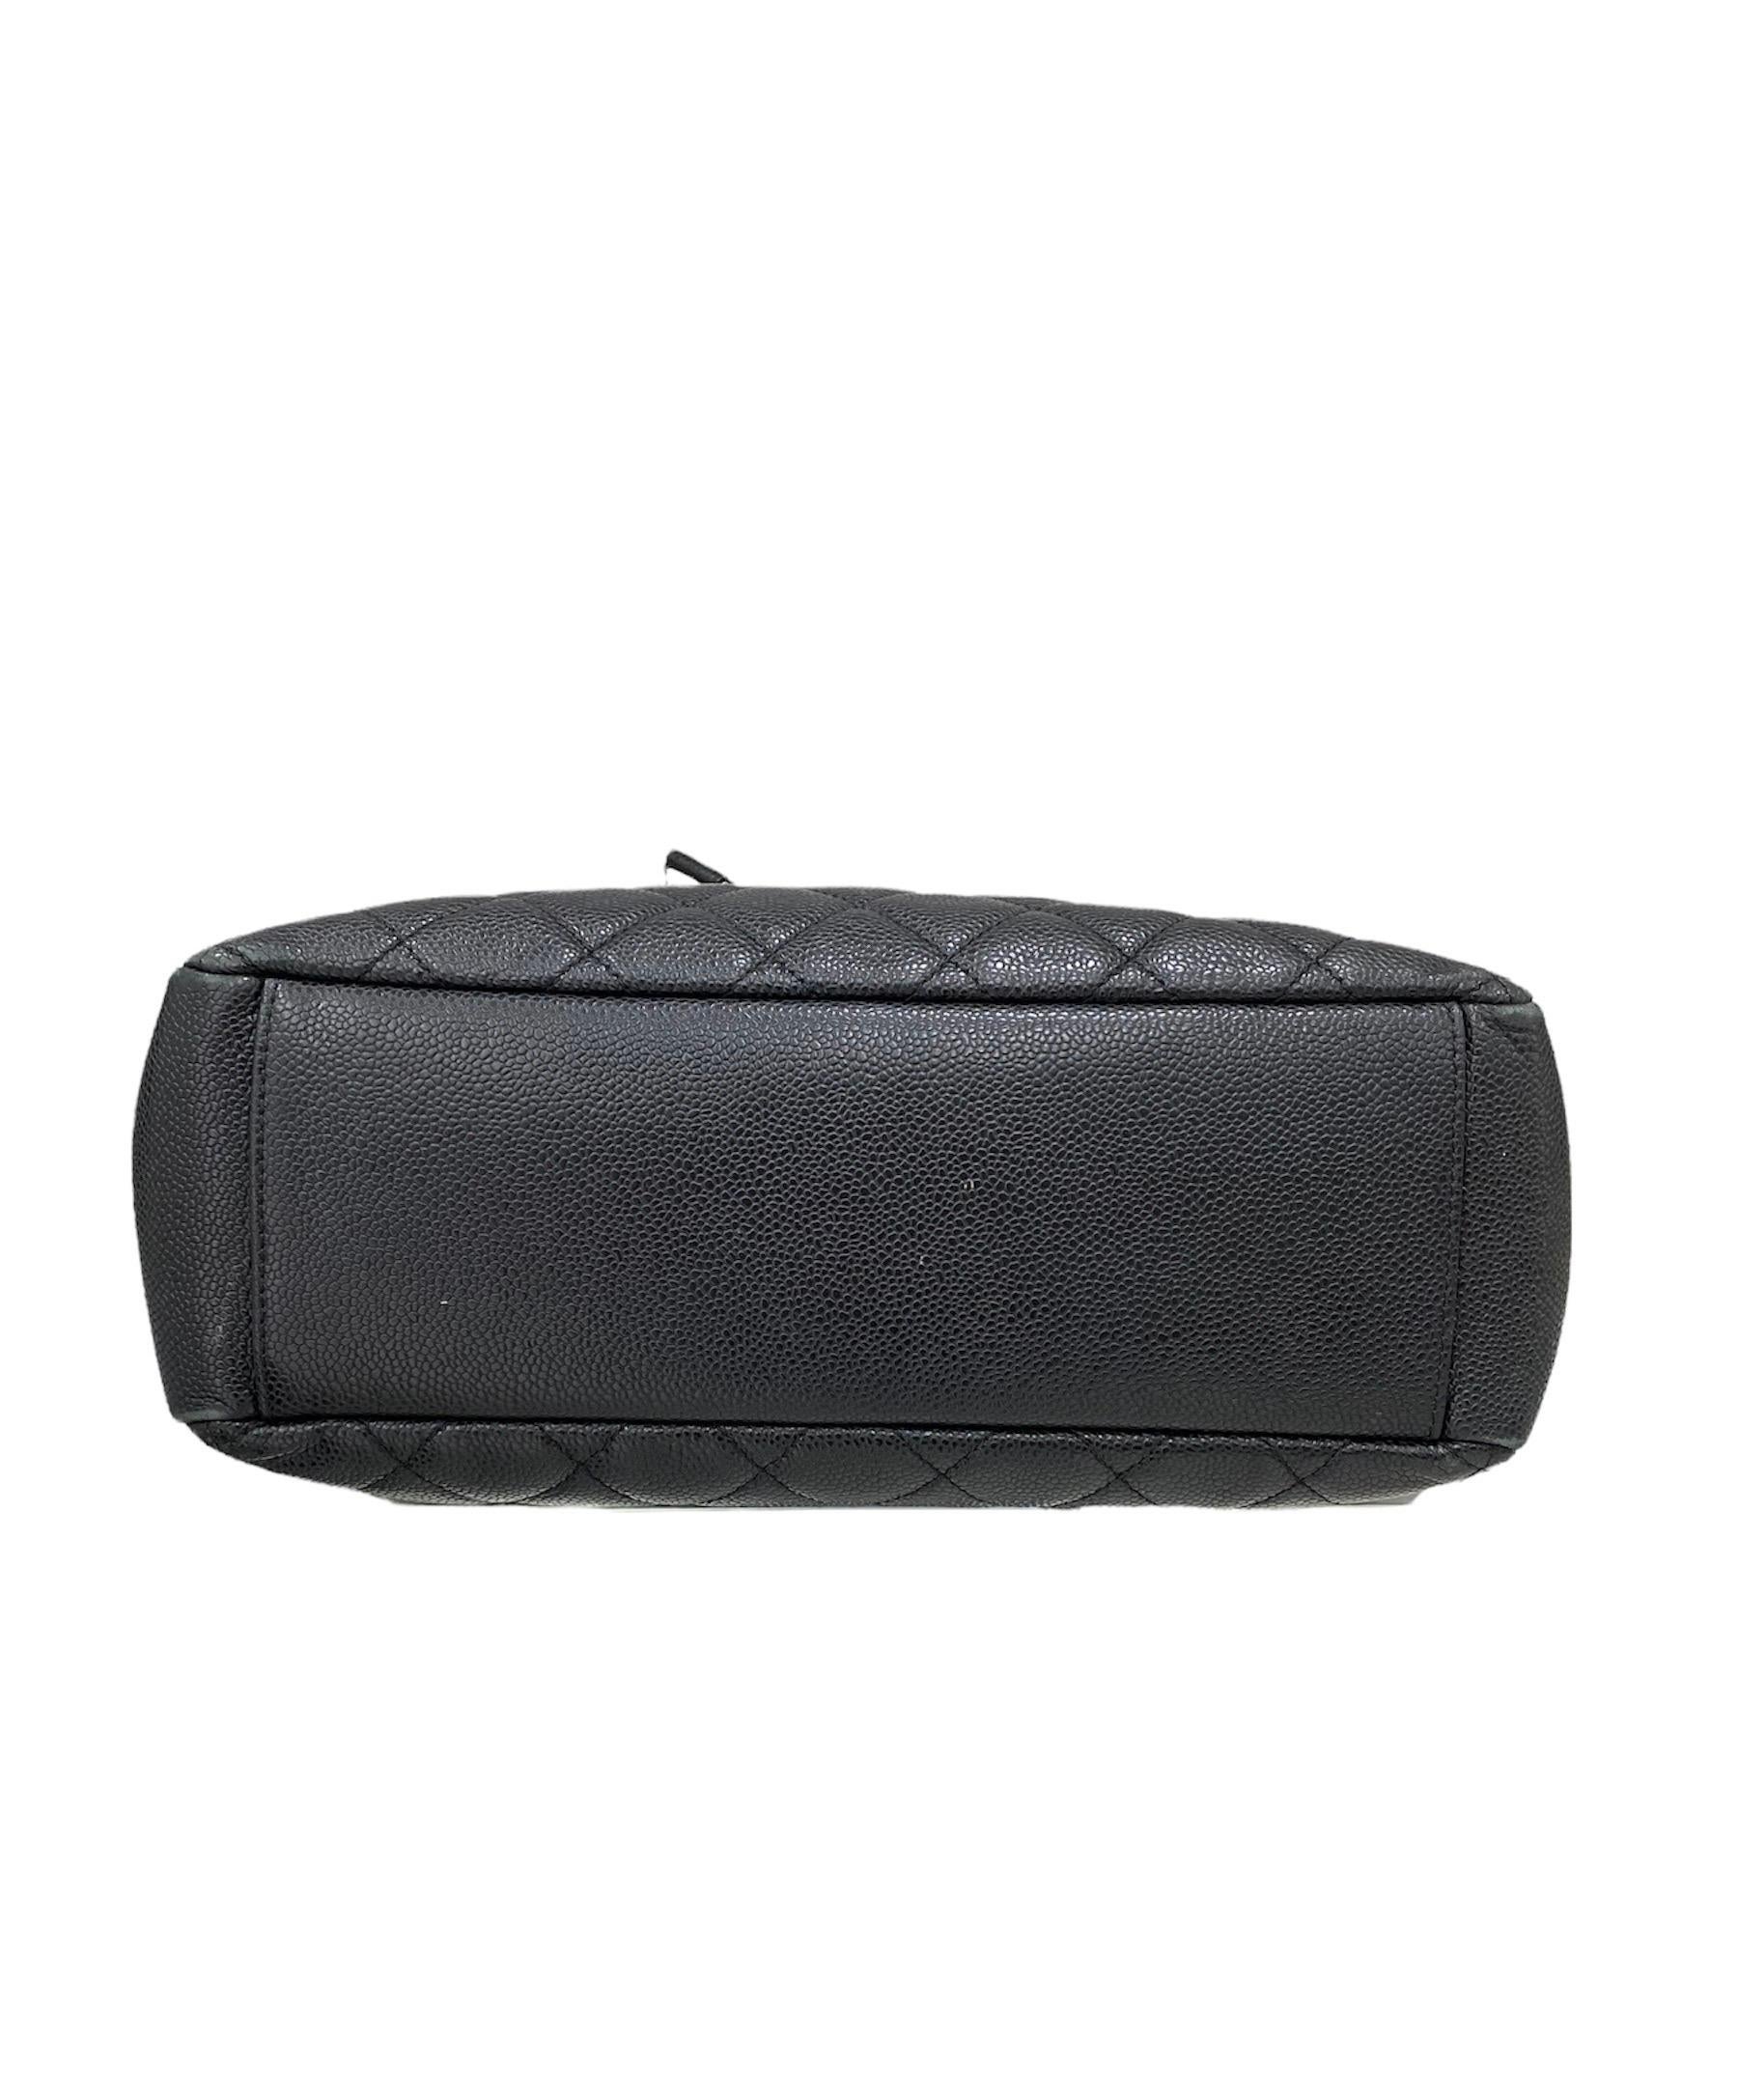 2013 Chanel PST Black Caviar Leather Shoulder Bag  5